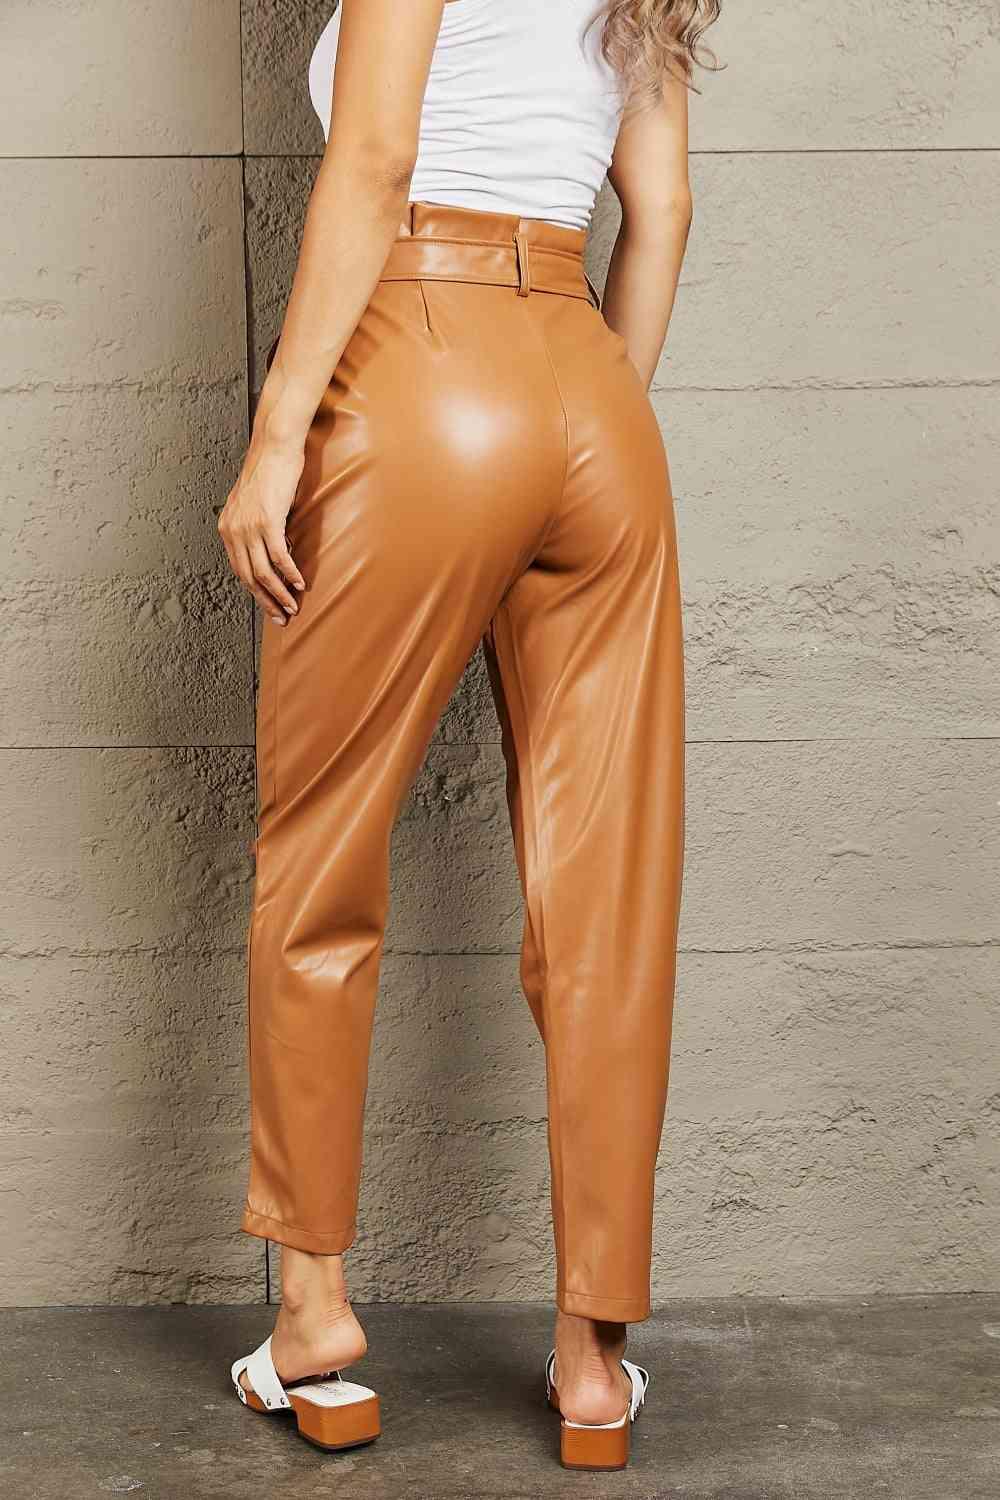 Bona Fide Fashion - Full Size Faux Leather Paperbag Waist Pants - Women Fashion - Bona Fide Fashion